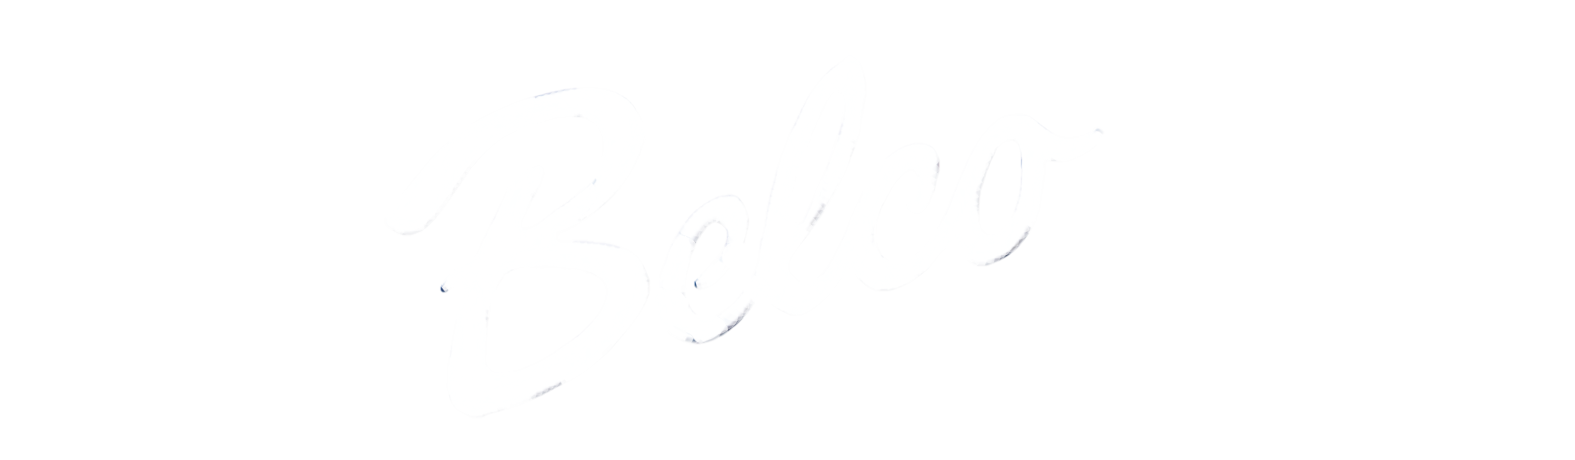 Belco logo hi res no white